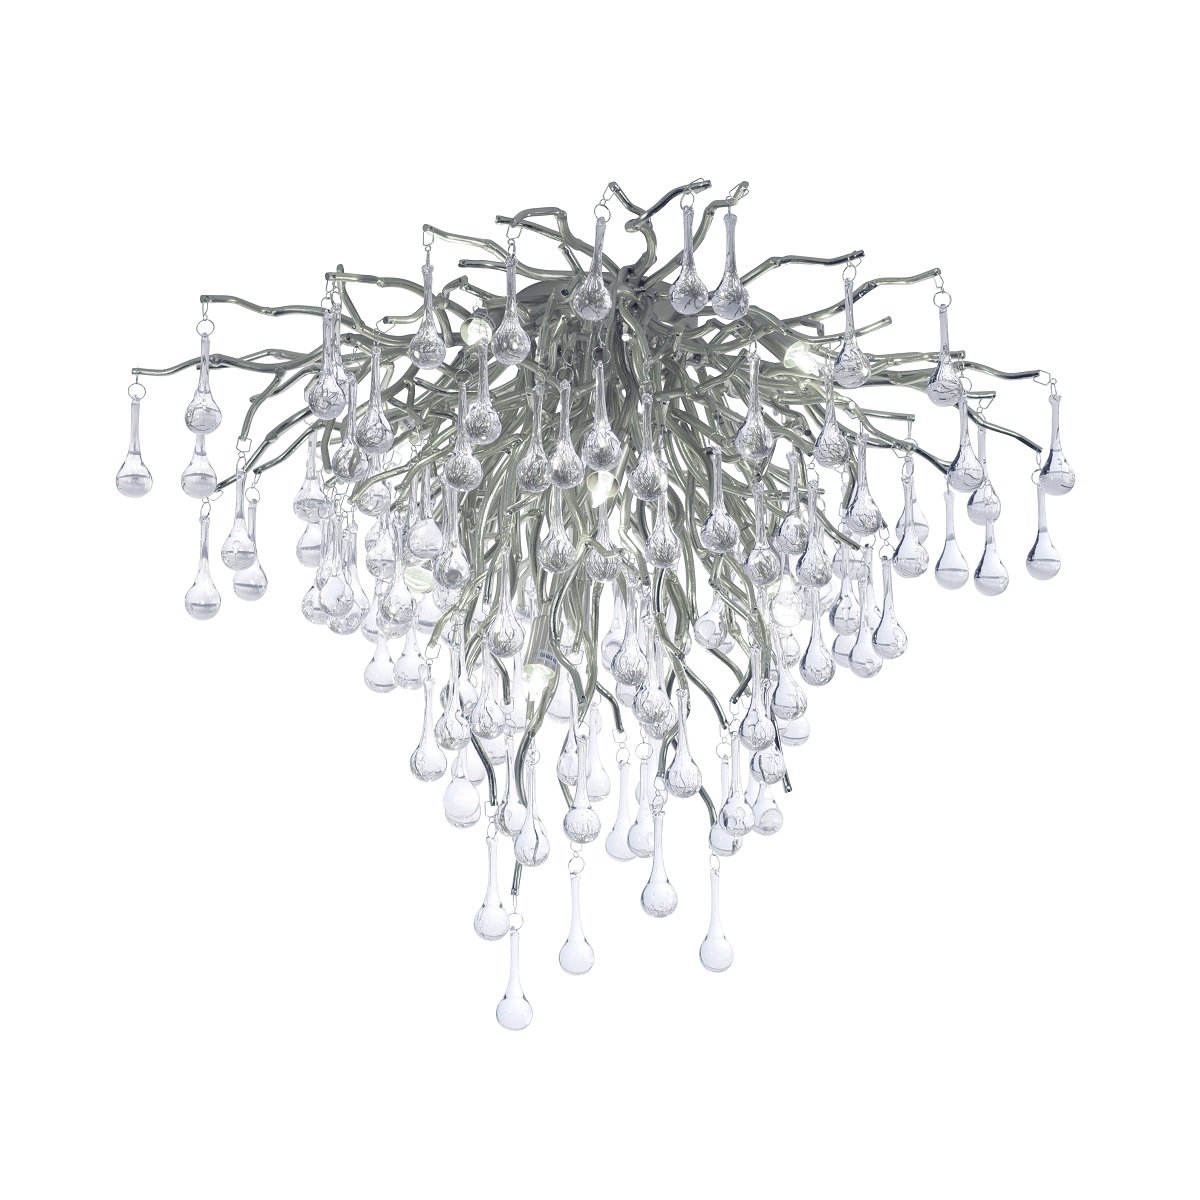 Paul Neuhaus im --> Deckenleuchte 8091-55 online kaufen & silberfarbig Leuchten Lampen ICICLE Shop Glasbehang